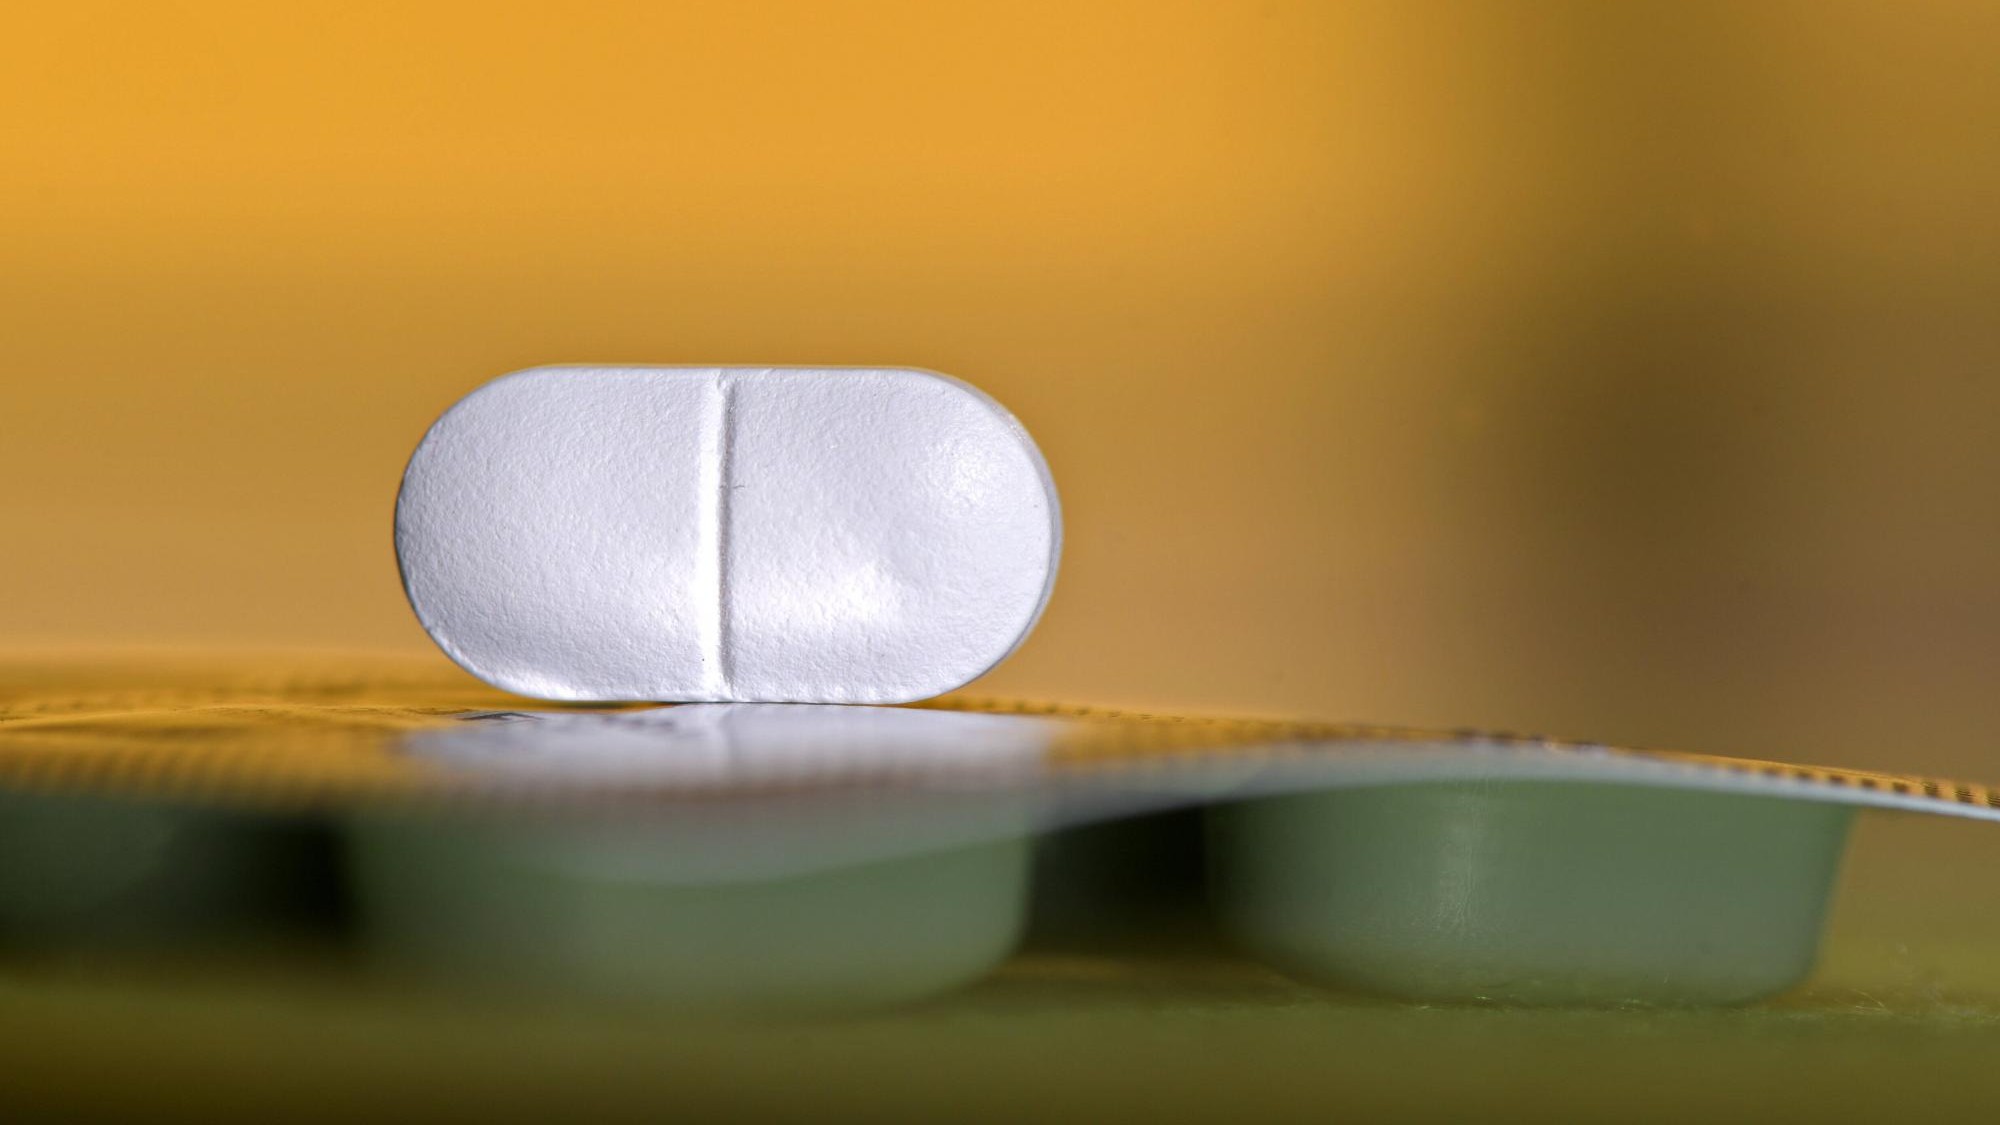 Arzneimittel-Mangel - Branchenverband schlägt Stress-Tests vor